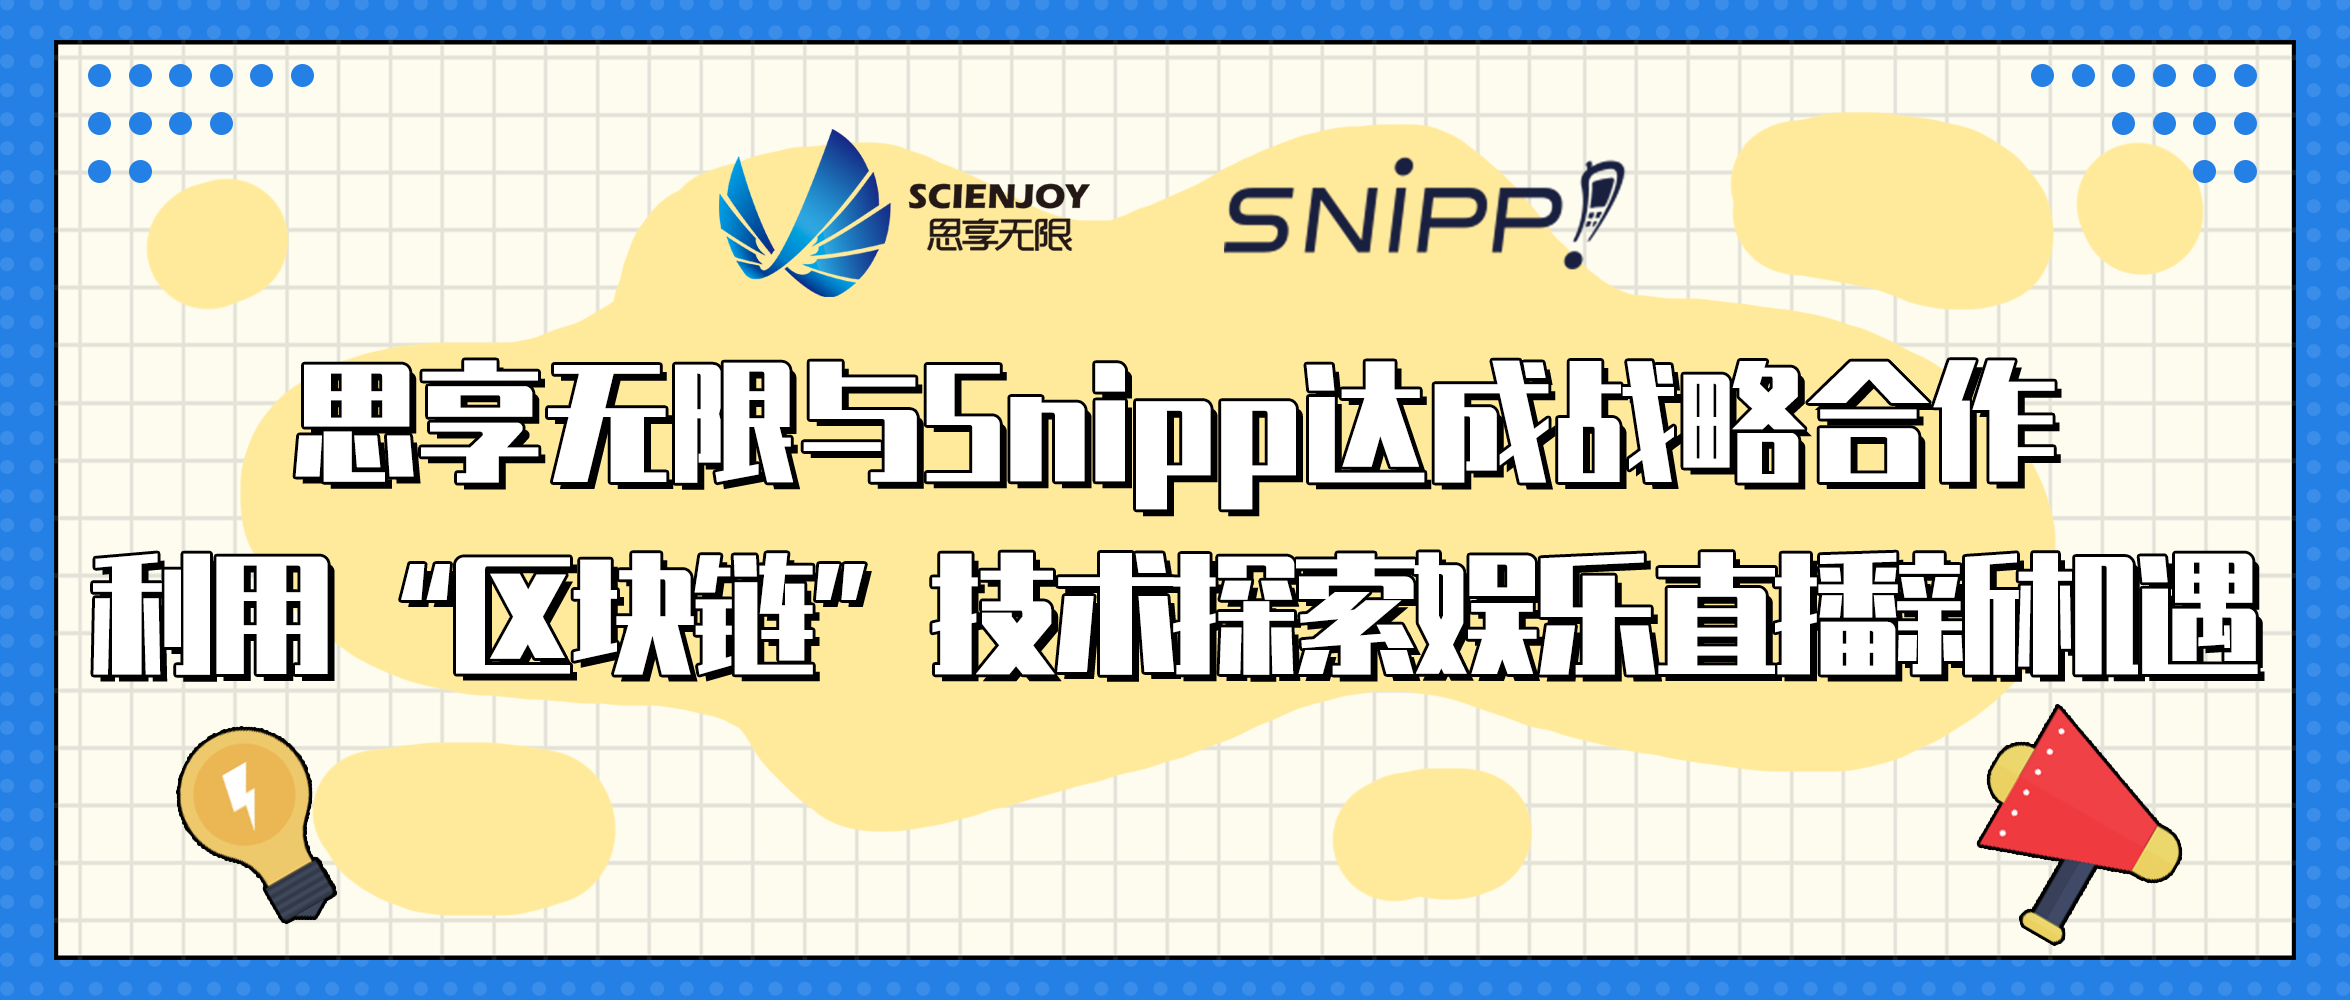 思享无限与Snipp达成战略合作 用区块链技术探索直播新机遇